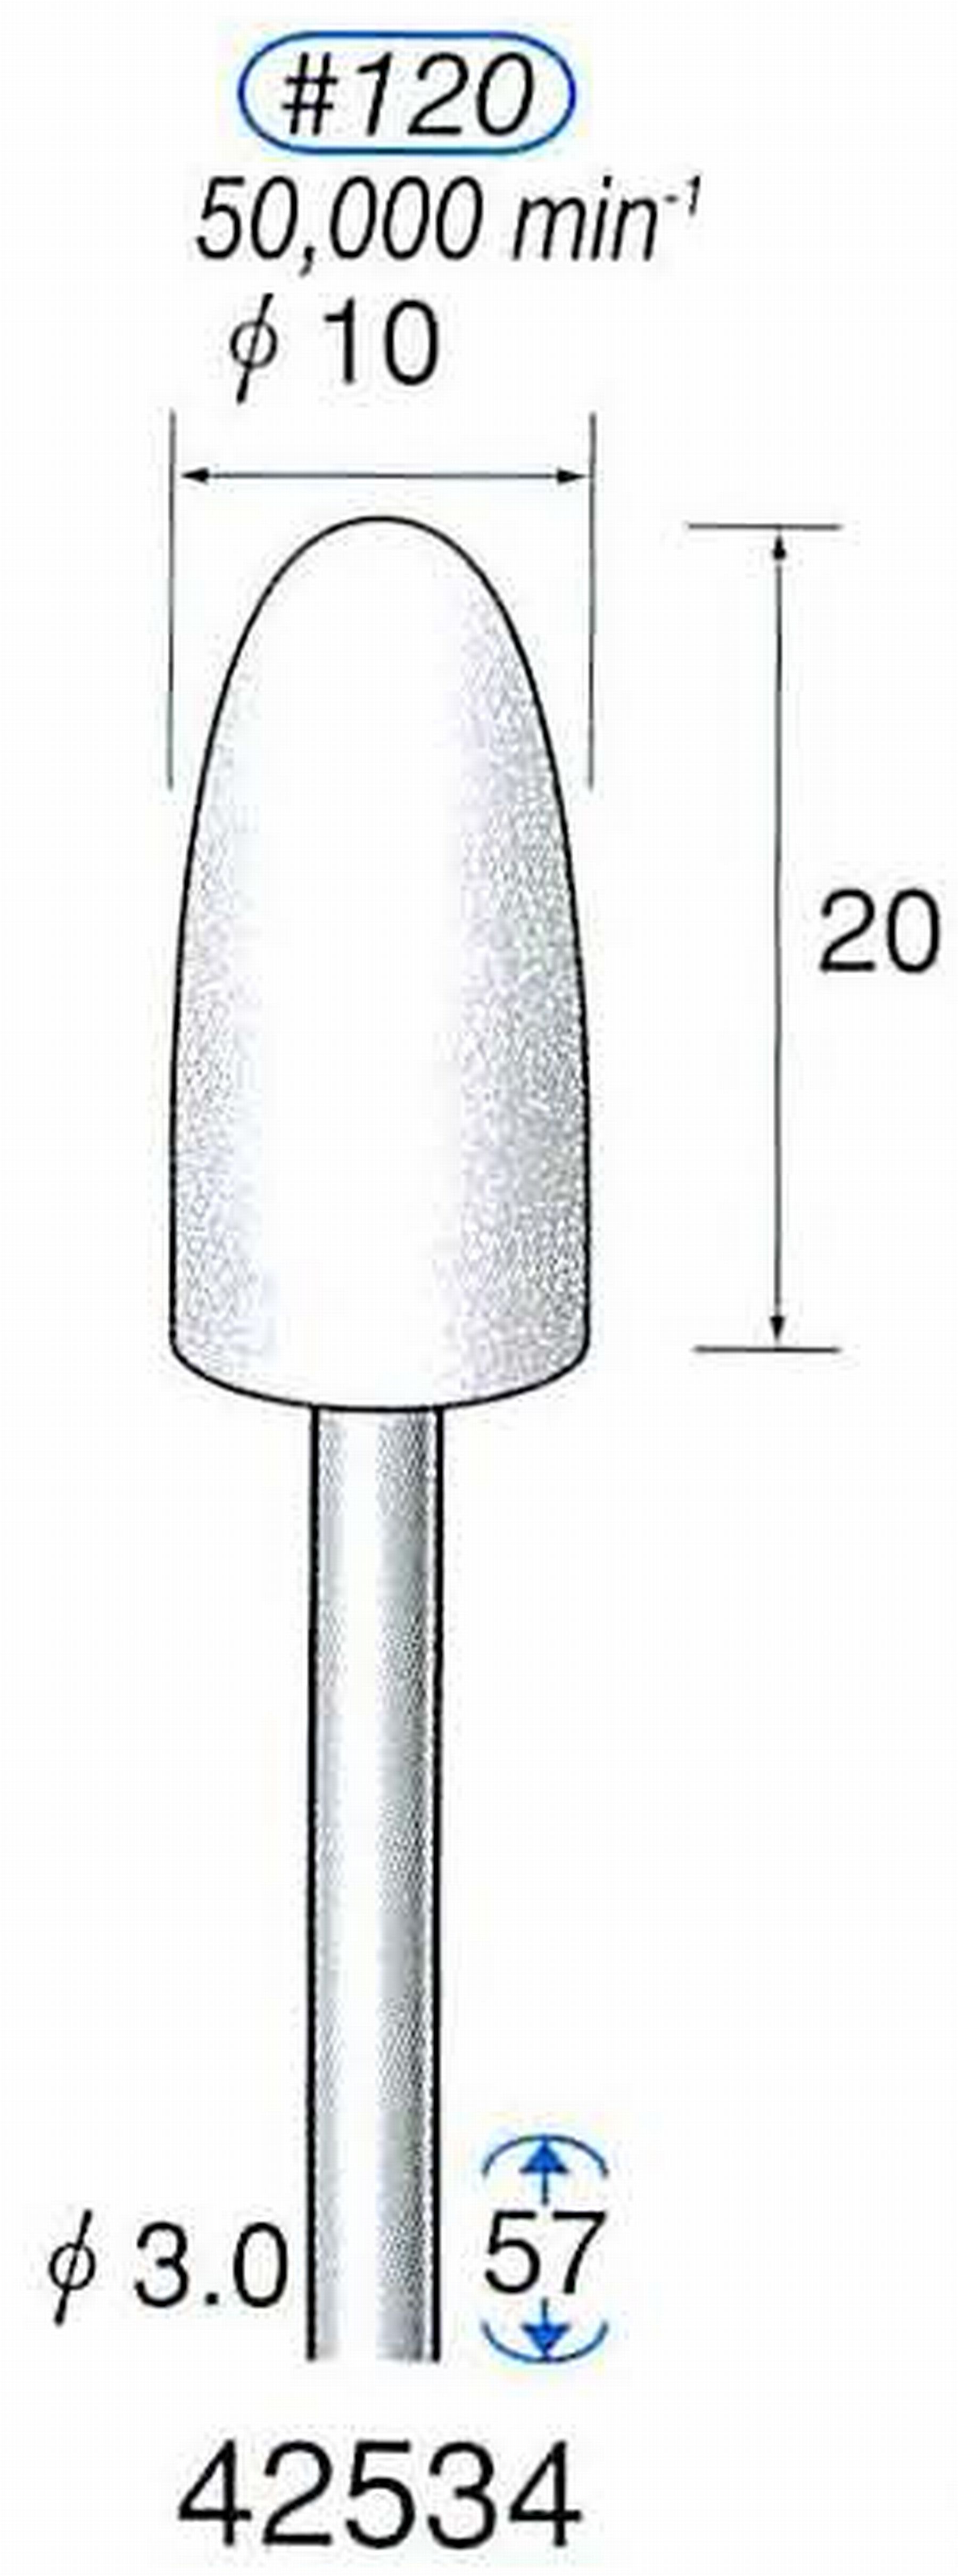 ナカニシ/NAKANISHI 軸付砥石(WA砥粒) 一般研削用 軸径(シャンク) φ3.0mm 42534